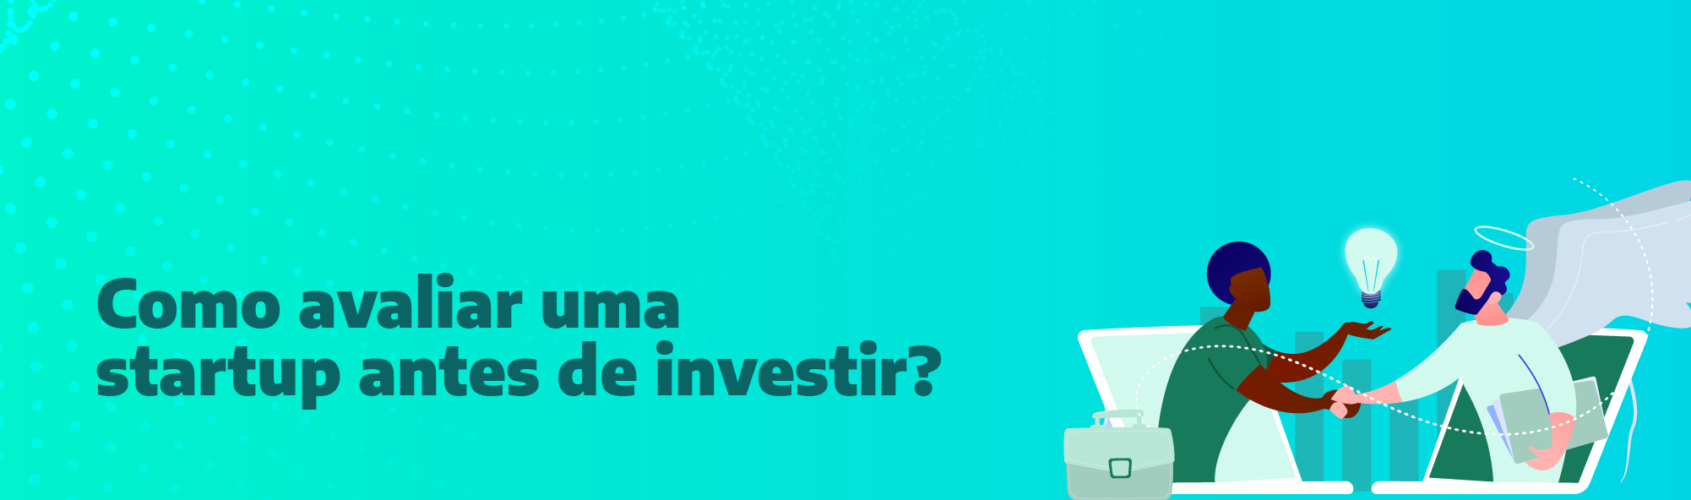 Como avaliar uma startup antes de investir?